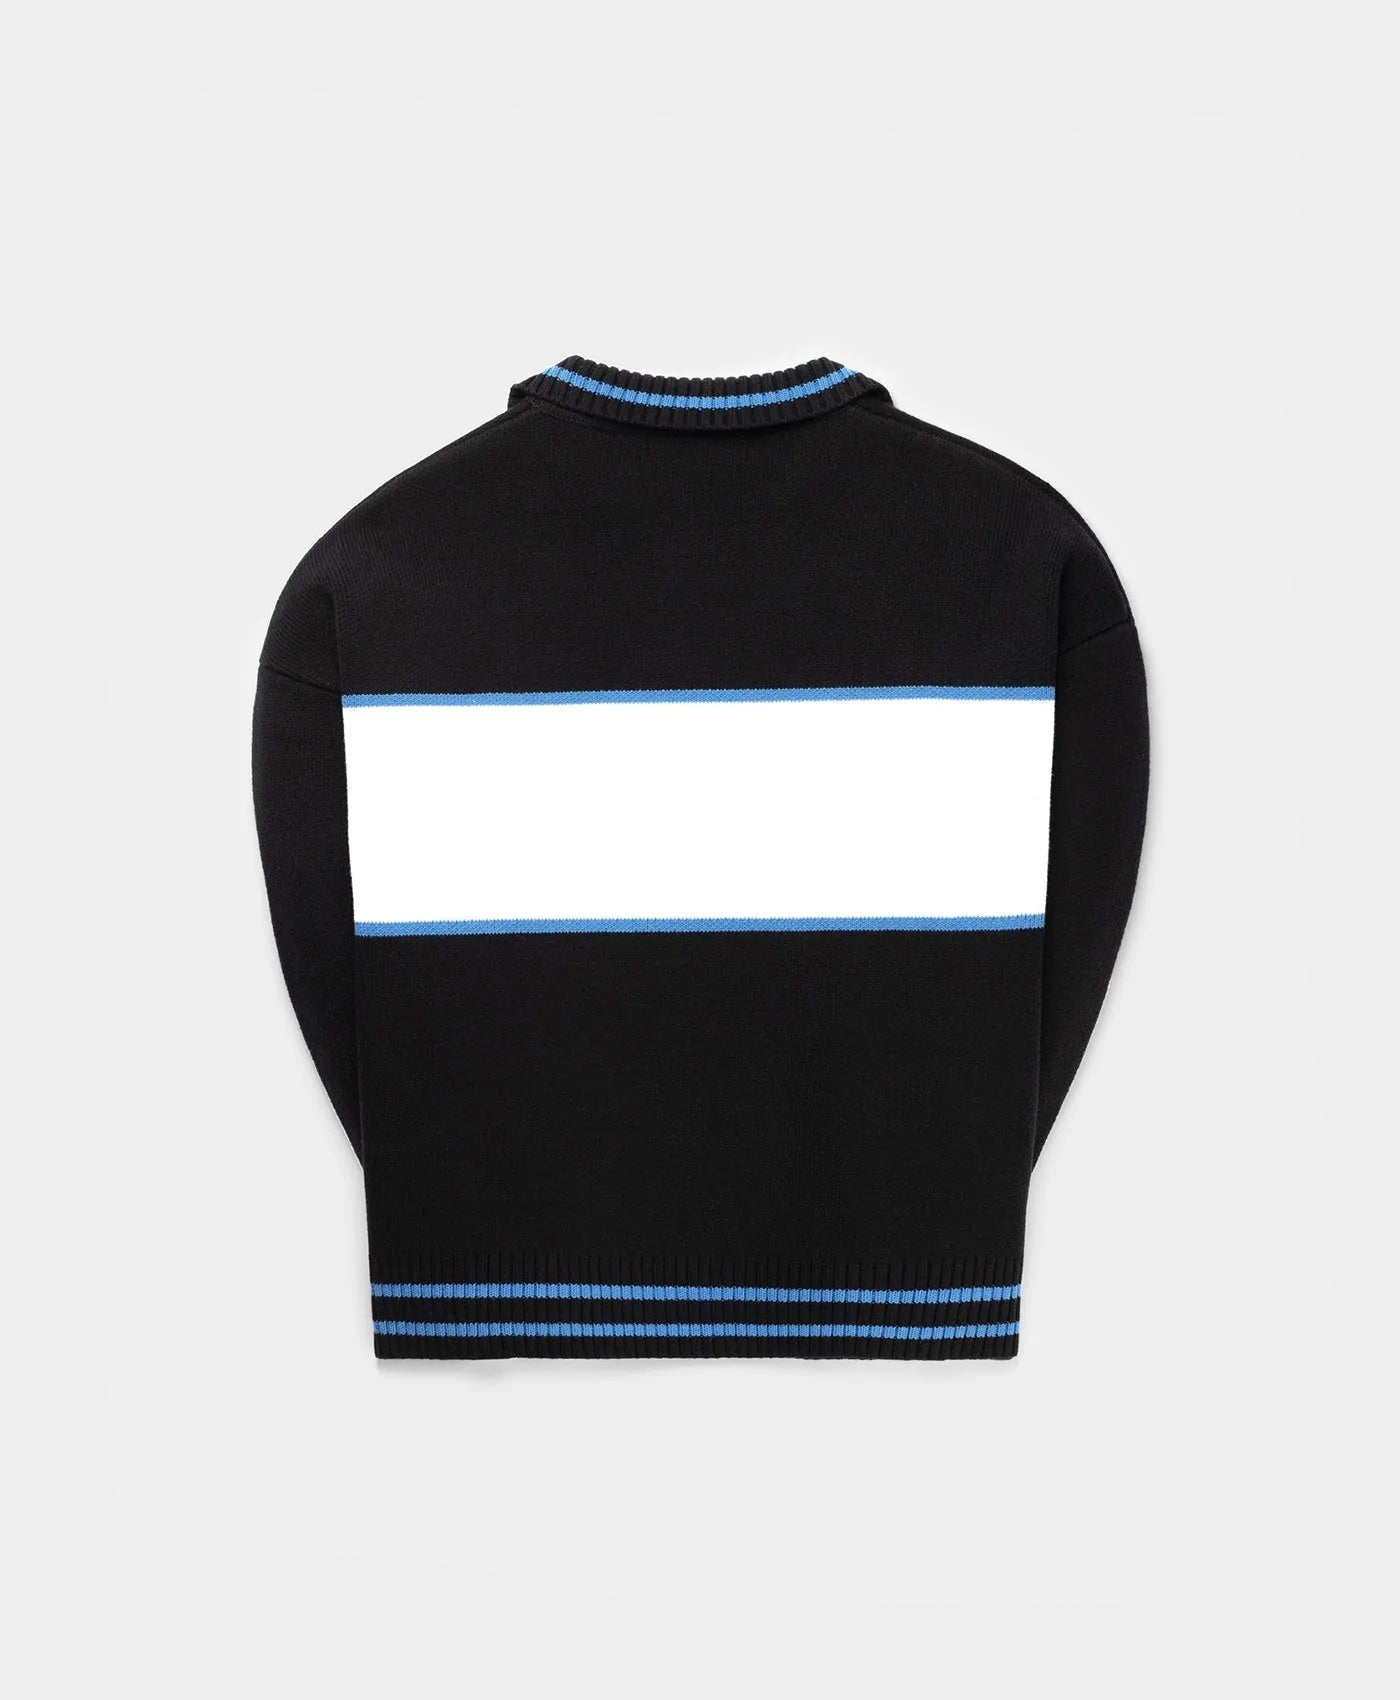 DP - Black Nemsi Sweater - Packshot - Rear